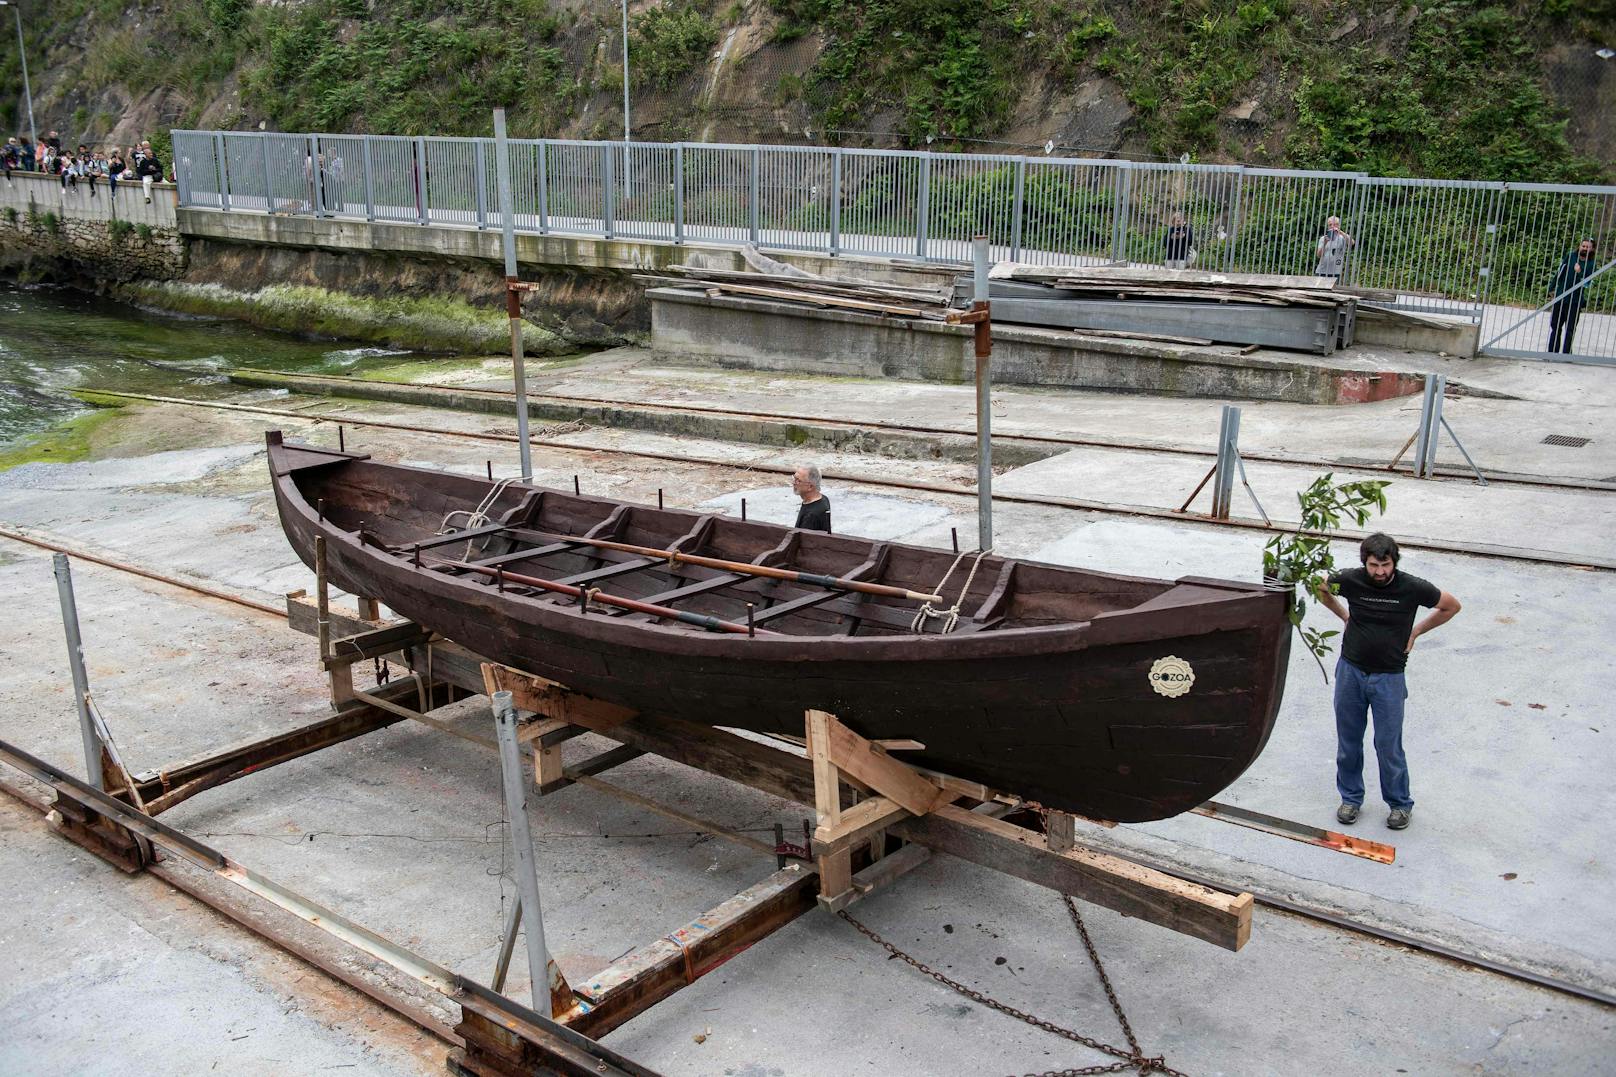 Das 8 Meter lange Boot ist einem Walfangboot aus dem 16. Jahrhundert nachempfunden, das nach einer unglücklichen Reise über den Atlantik vor der Küste Kanadas sank.